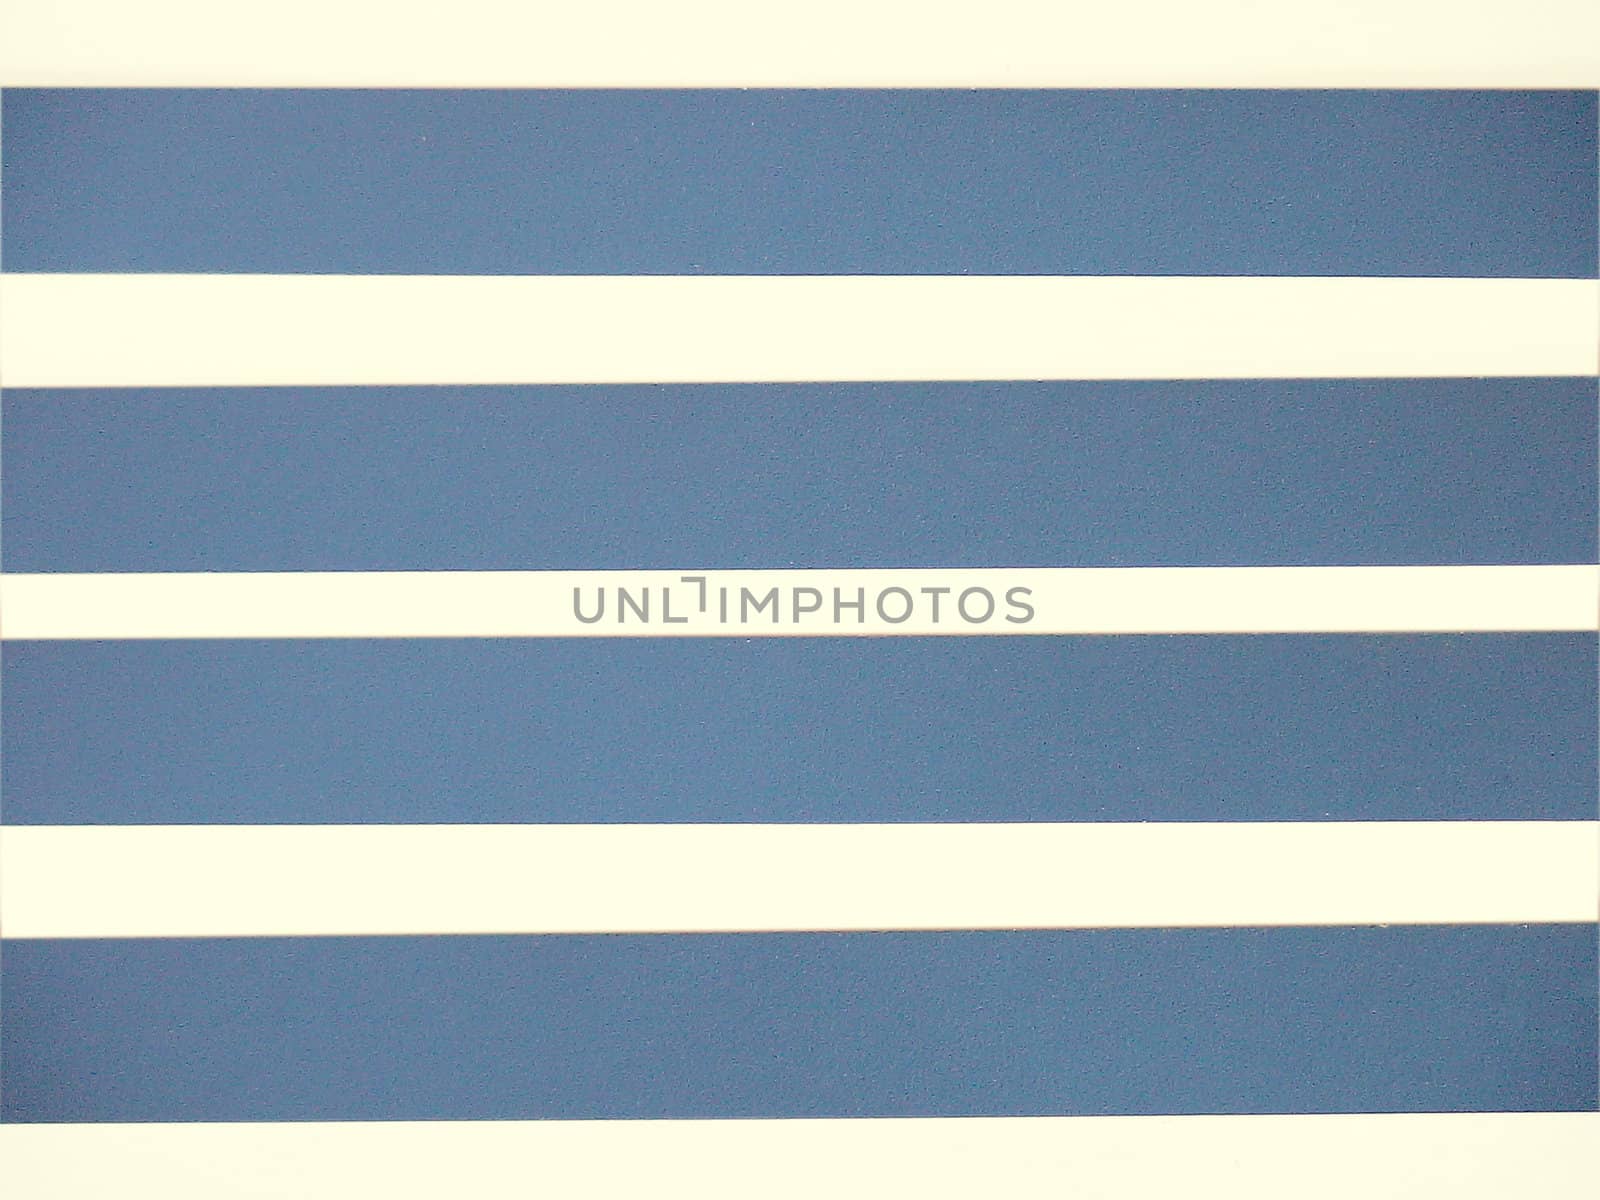 Dark blue strips on a white background